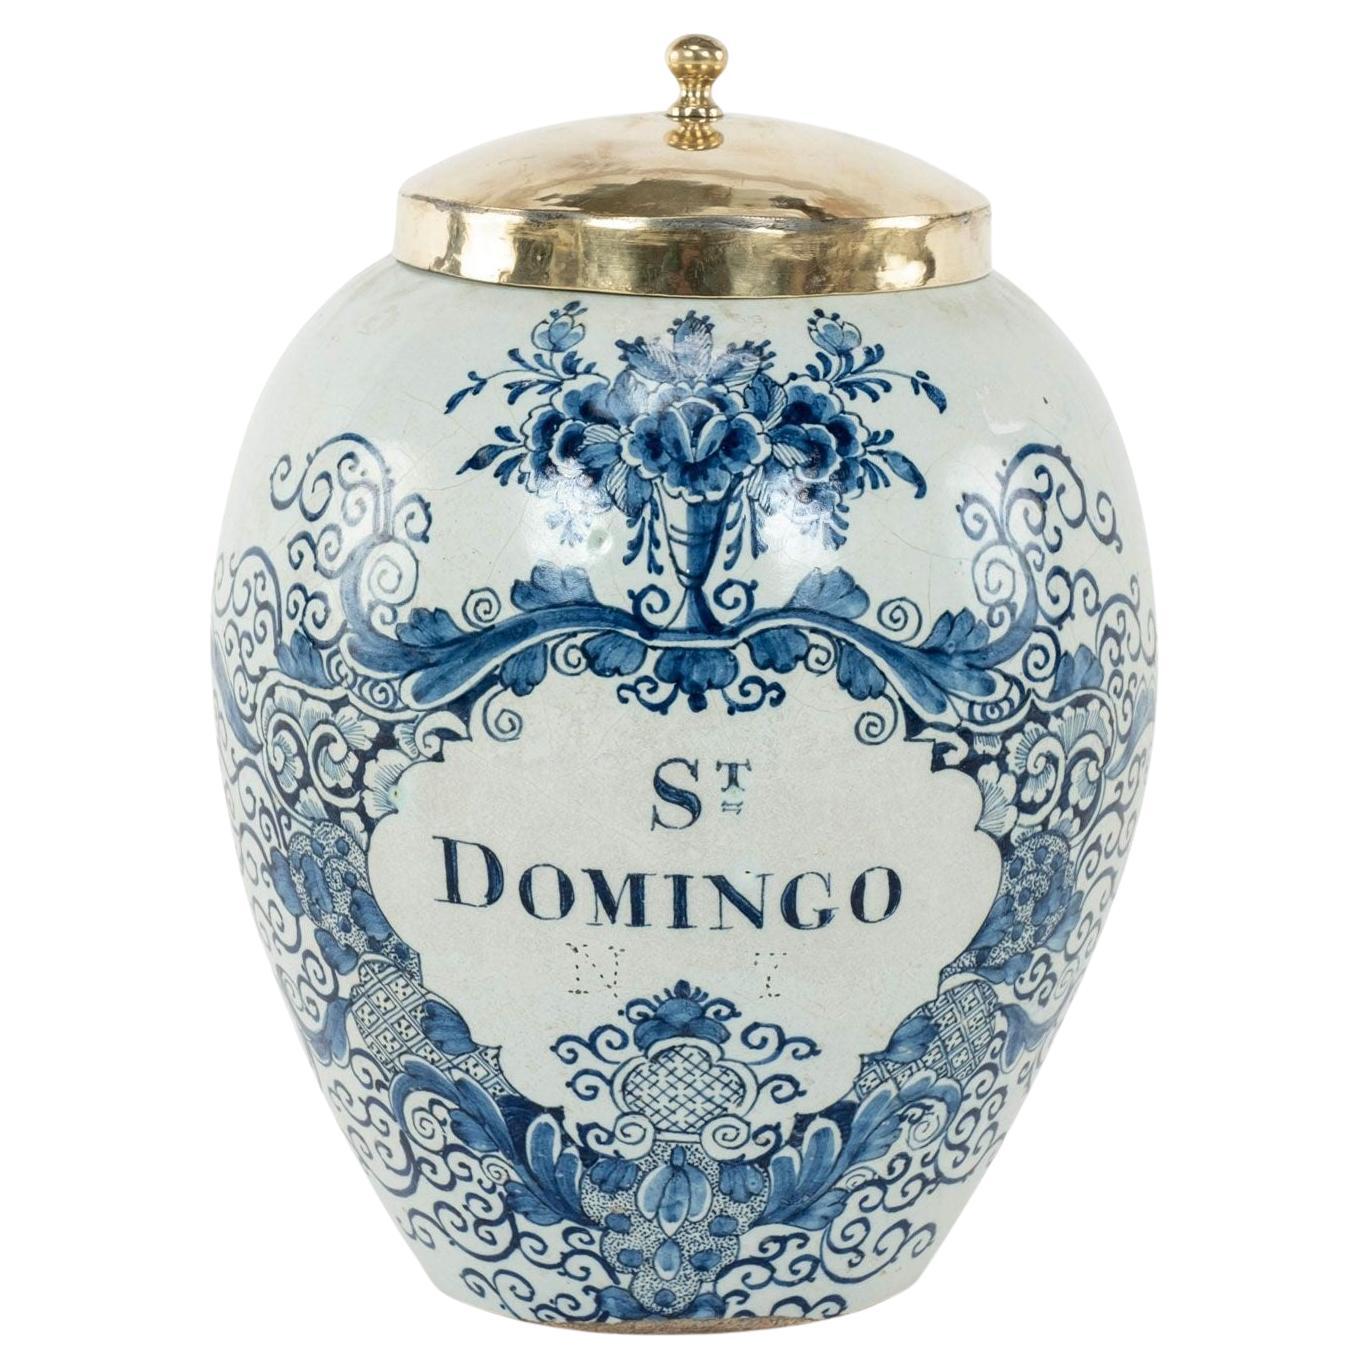 Delft Blau und Weiß "St Domingo" Tabak JAR